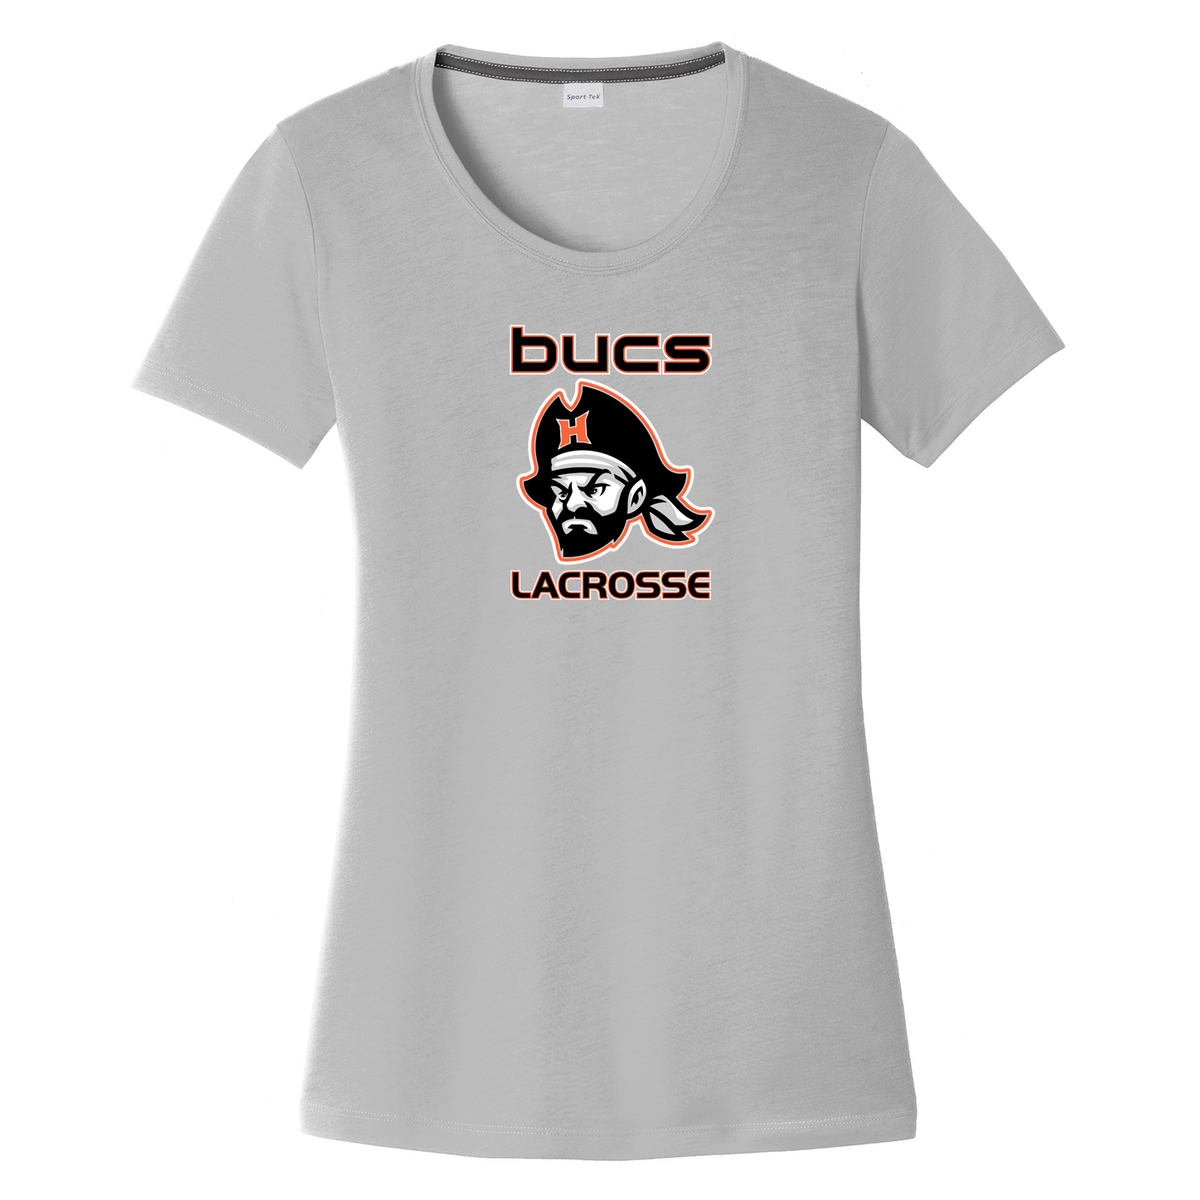 Bucs Lacrosse Women's CottonTouch Performance T-Shirt